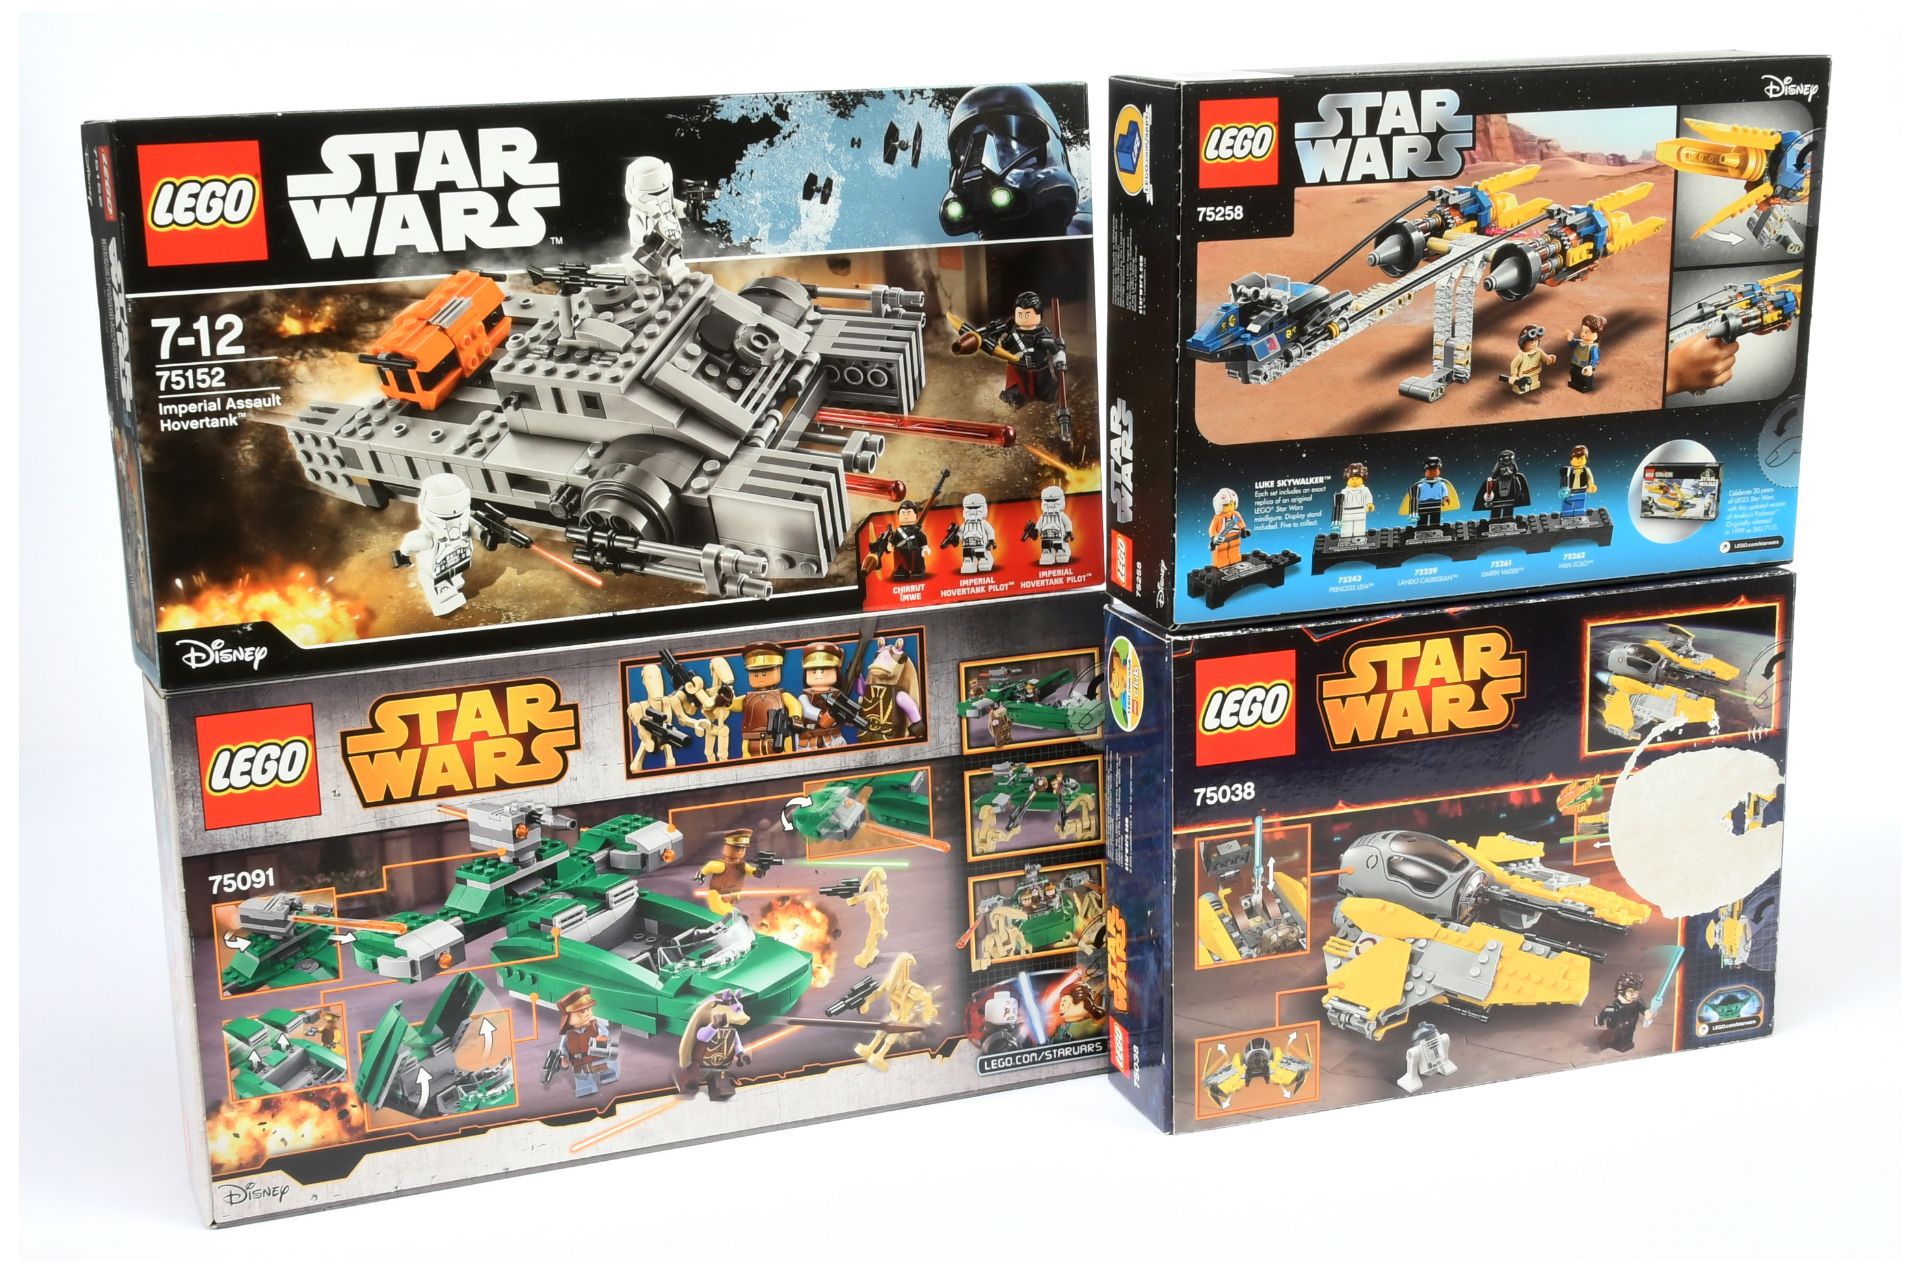 Lego Star Wars Group (1) 75152 Imperial Assault Hovertank (2) 75091 Flash Speeder (3) 75038 Jedi ... - Bild 2 aus 2